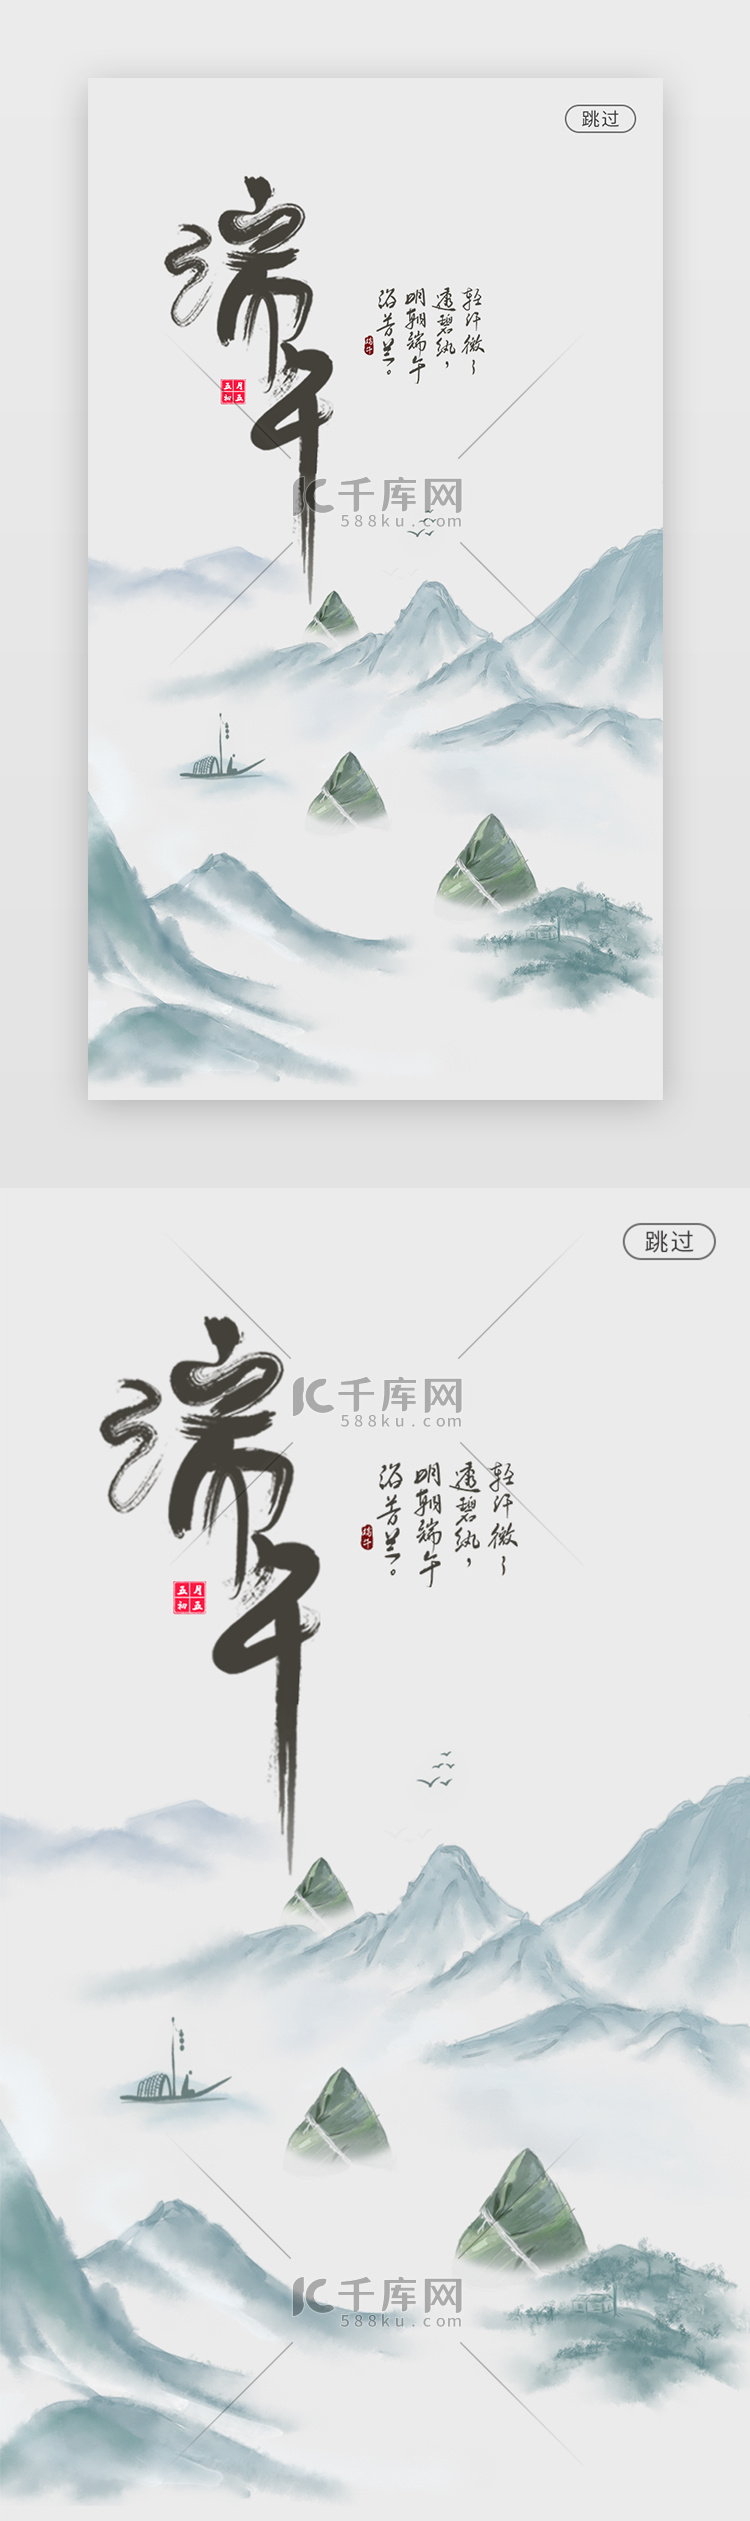 中国风传统节日端午节活动app闪屏